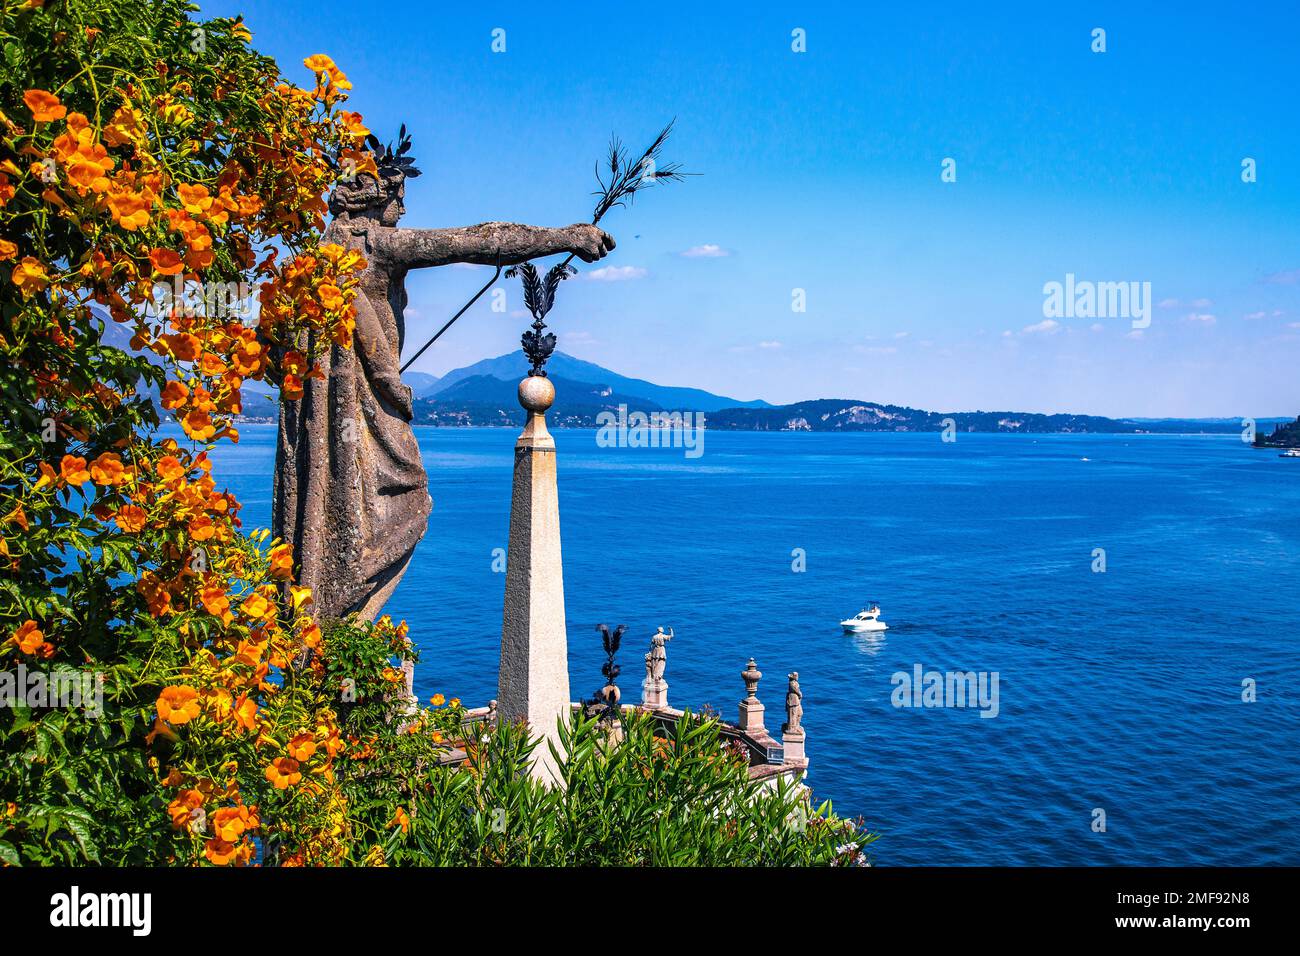 Giardino barocco in stile italiano sull'Isola Bella, nelle isole borromee nel lago maggiore Foto Stock